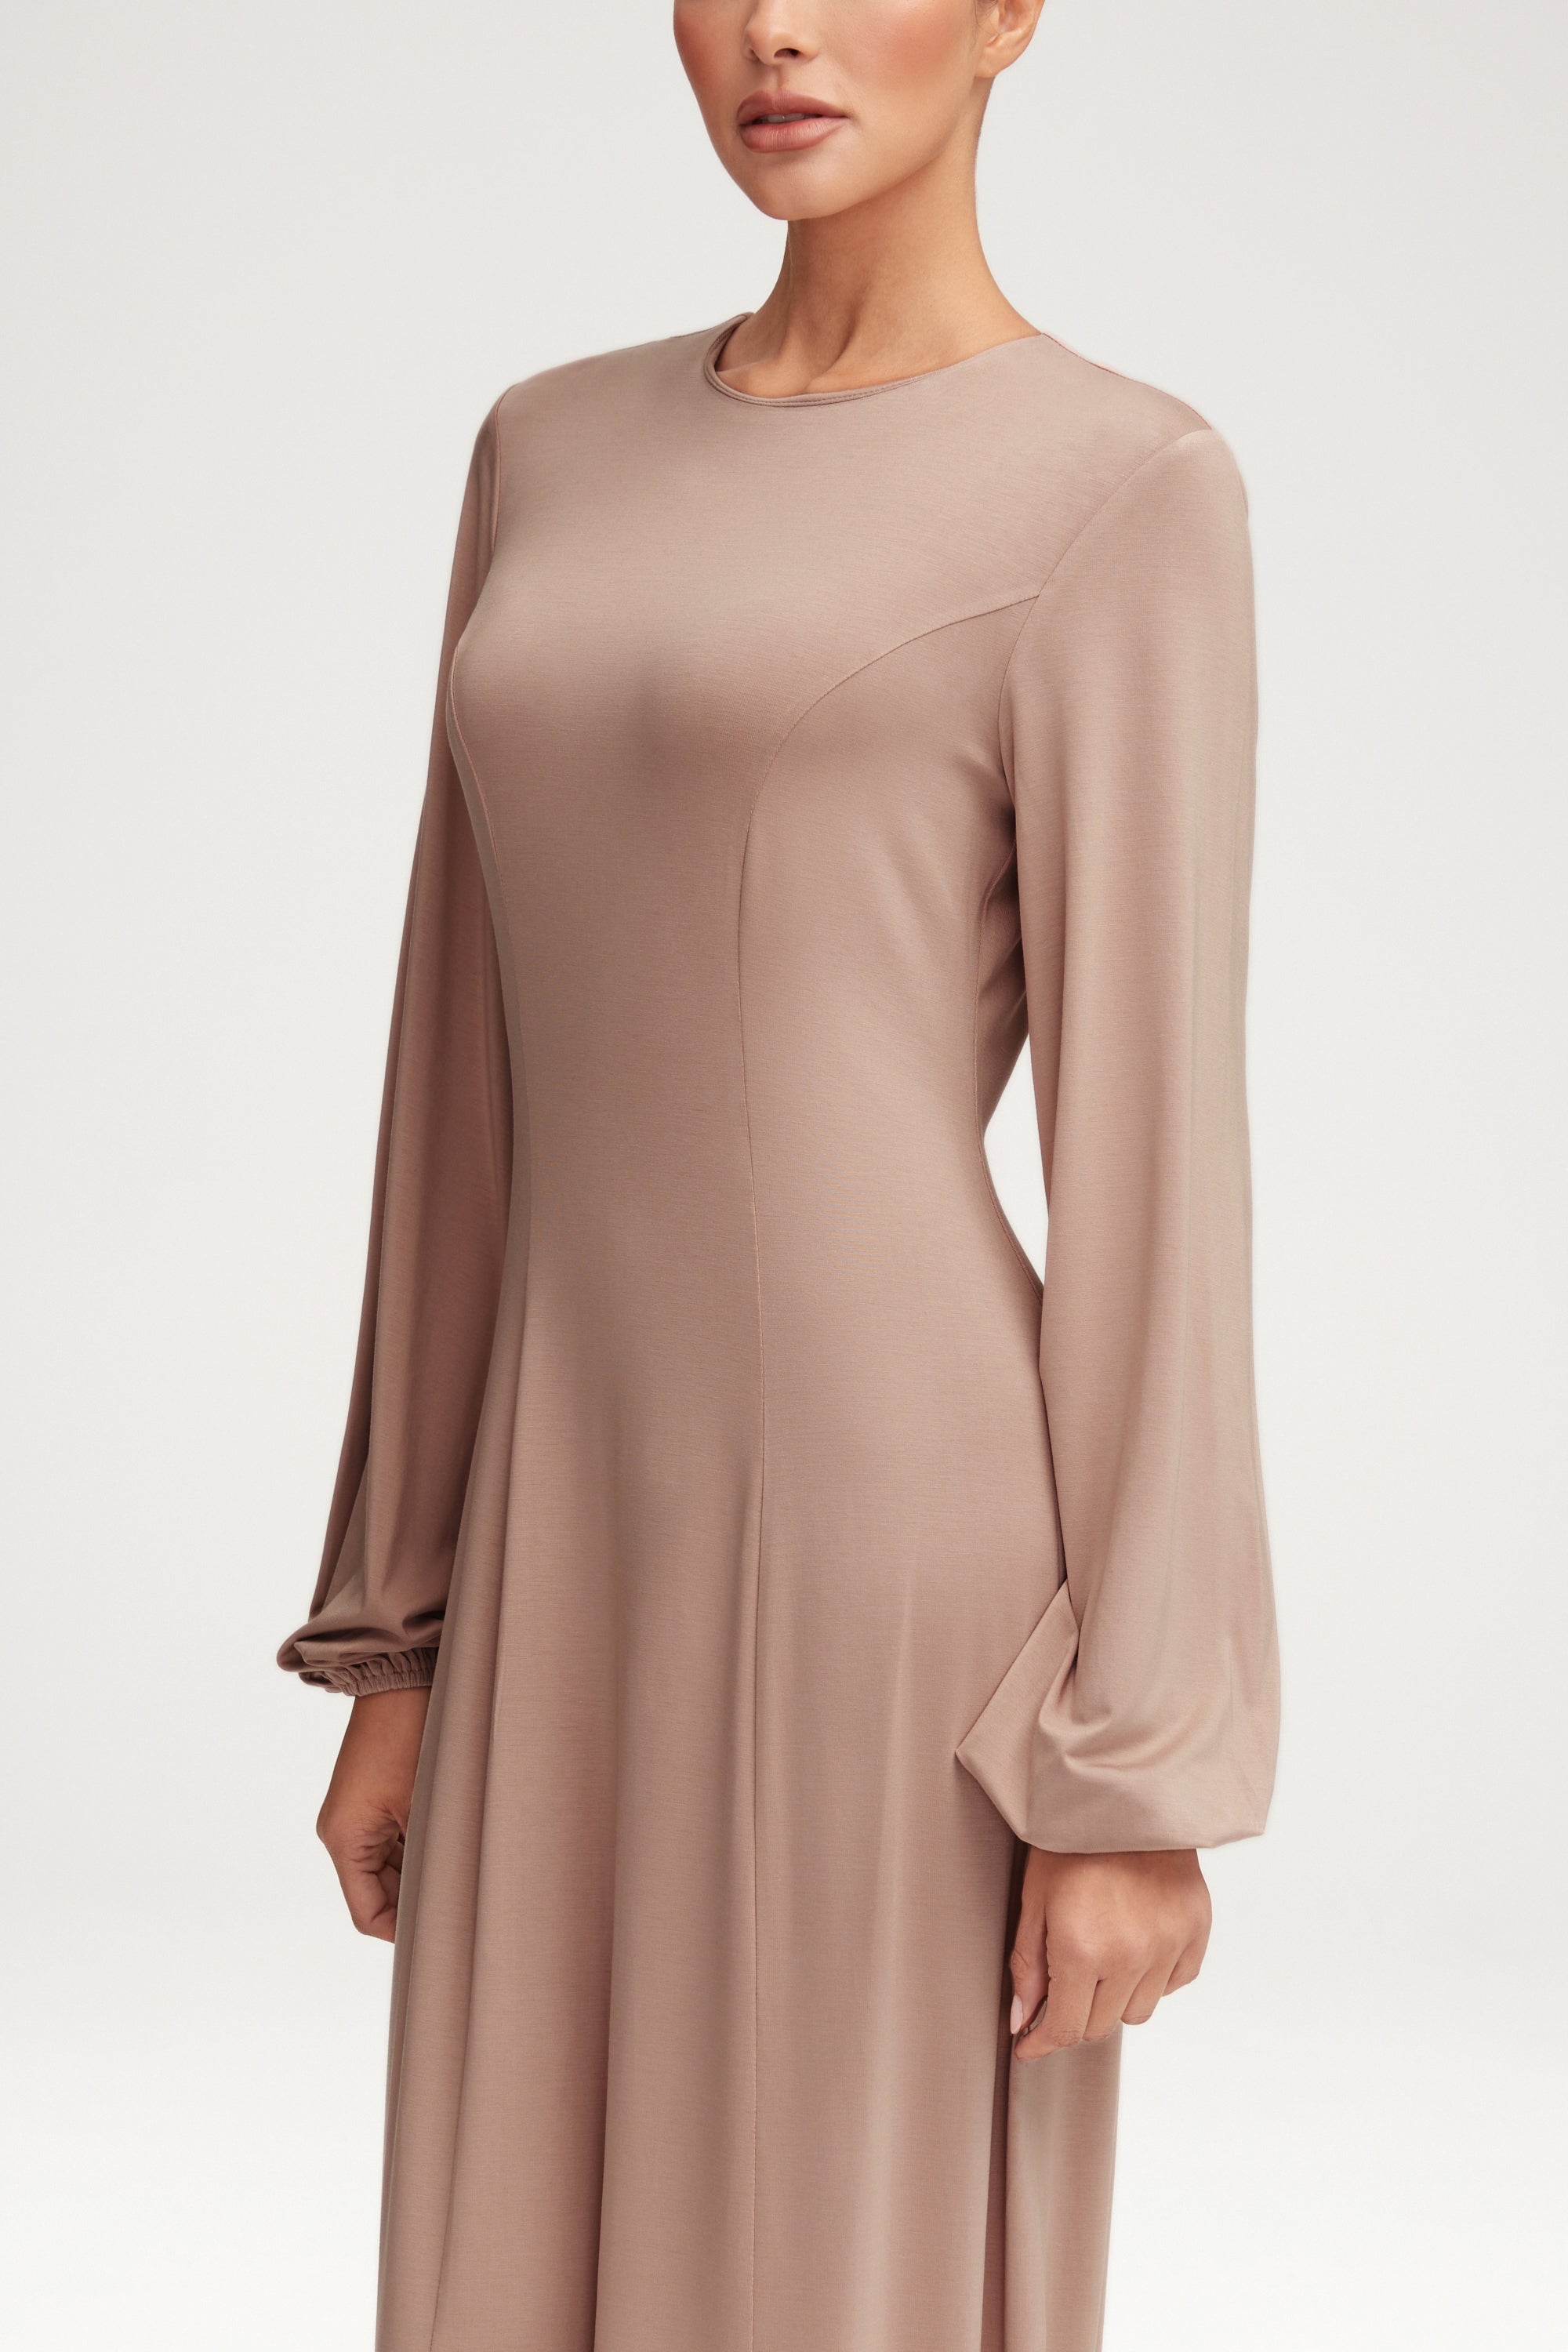 Hayat Jersey Princess Seam Maxi Dress - Mink Clothing Veiled 